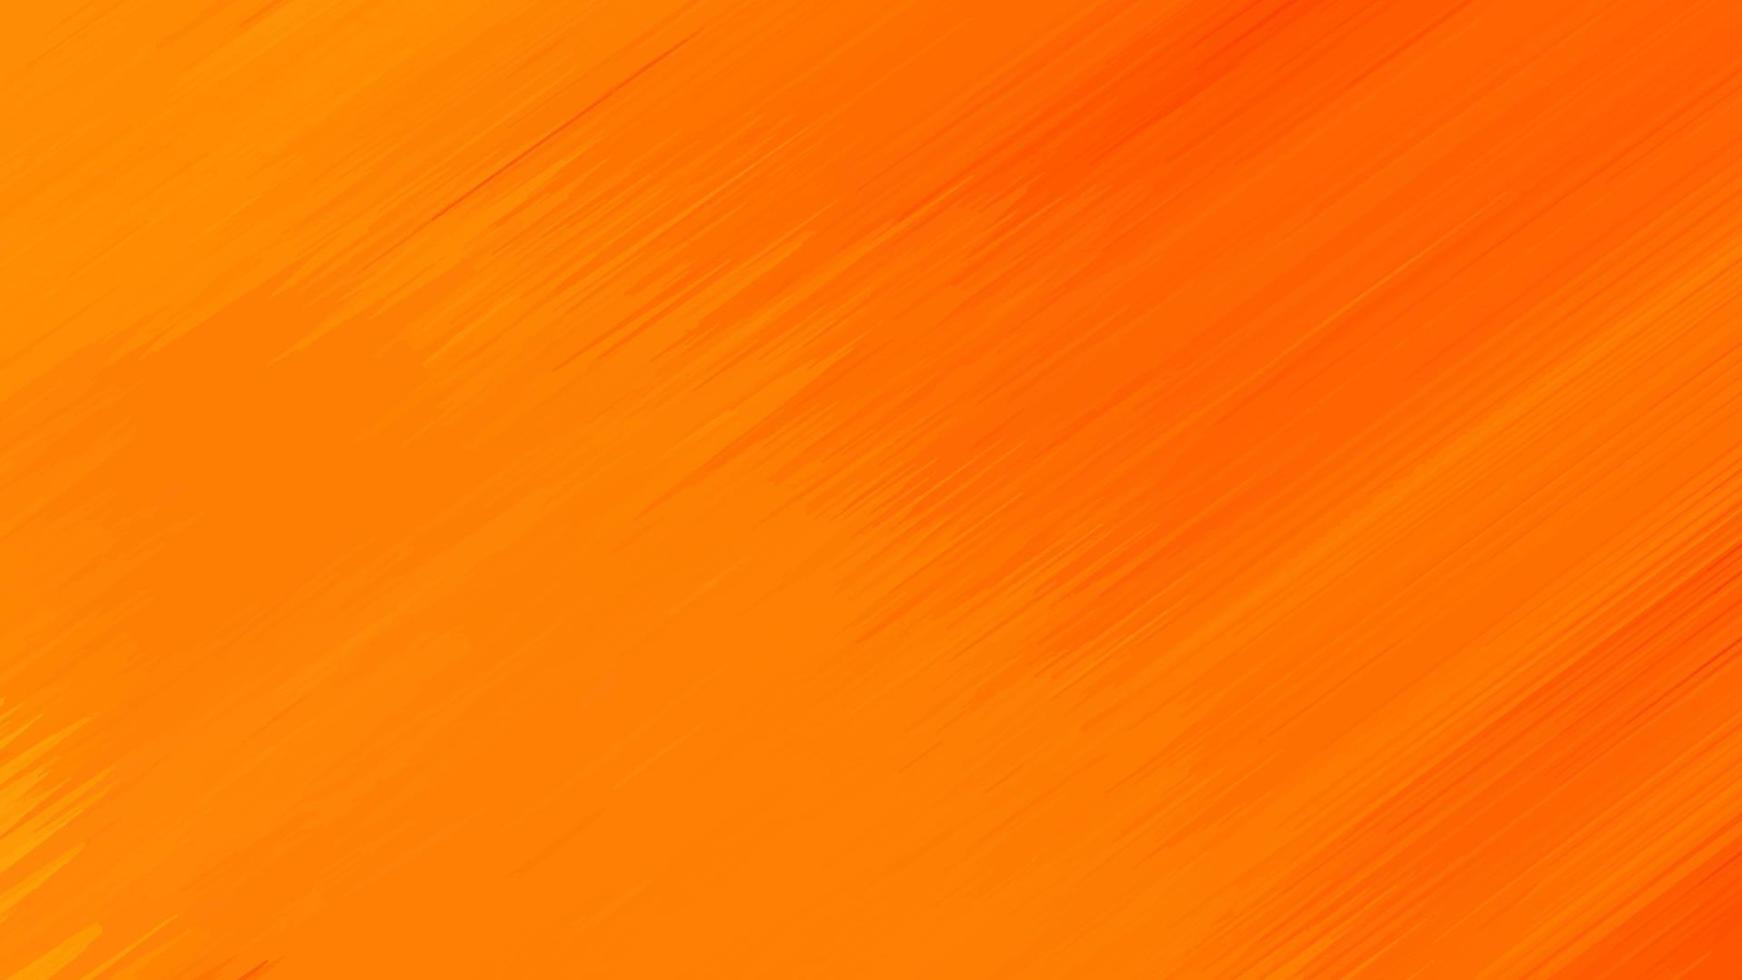 Thiết kế trừu tượng màu cam sẽ làm cho bất kỳ khu vực nào trong ngôi nhà của bạn trở nên phong phú và hiện đại hơn. Những đường nét trừu tượng độc đáo kết hợp với màu sắc tươi sáng và đầy cá tính sẽ tạo nên một không gian sống động và năng động. Xem ngay hình ảnh thiết kế này để làm mới không gian nhà của bạn.